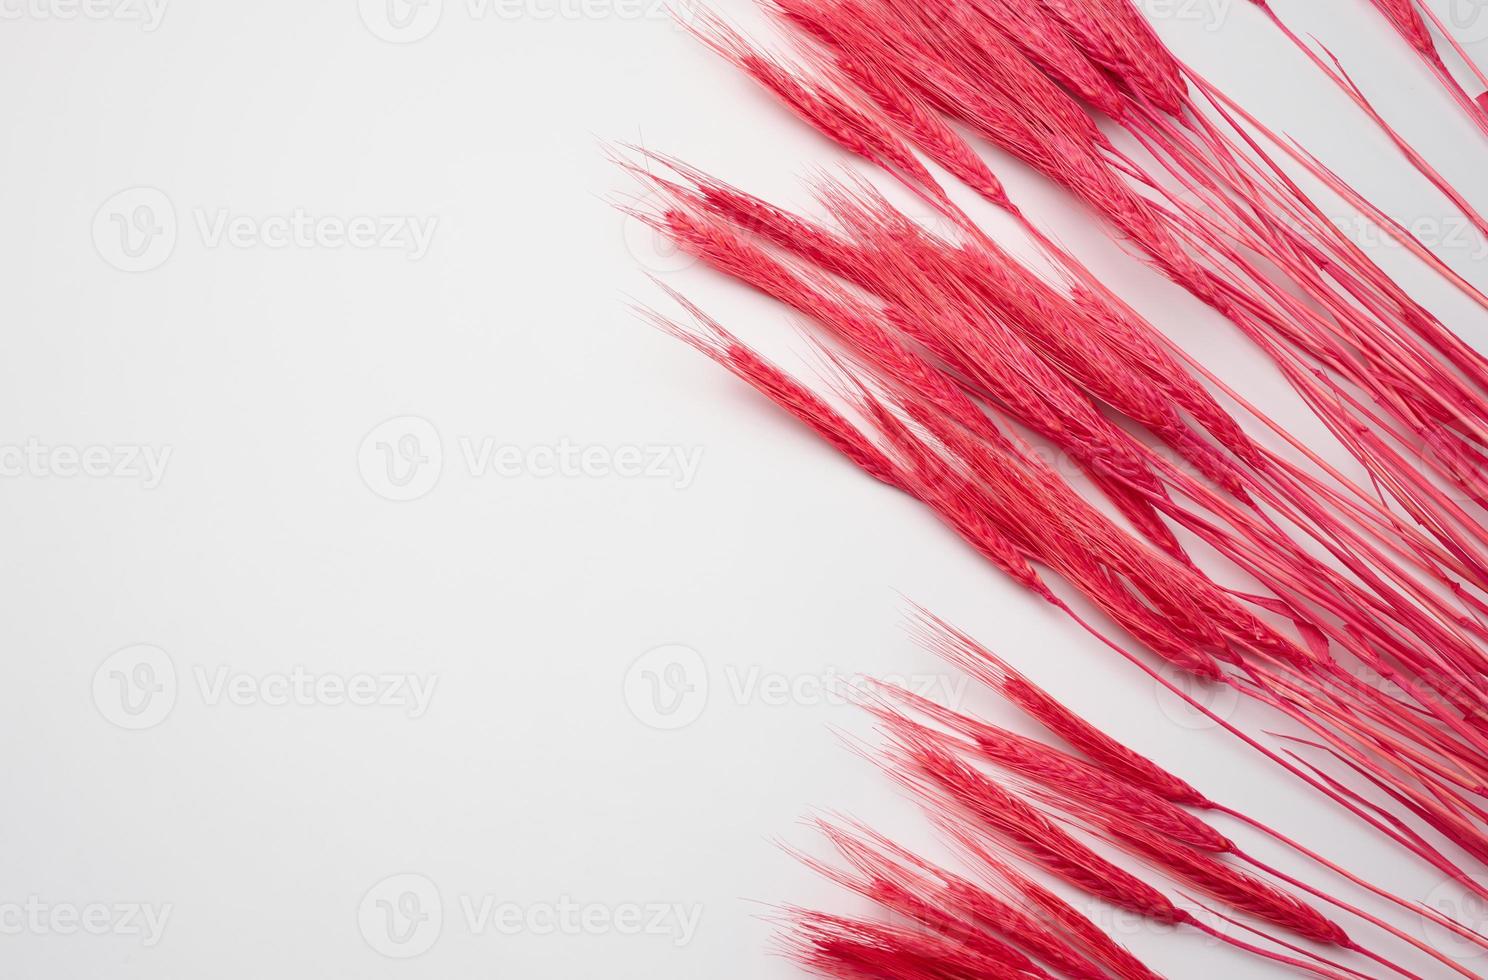 manojo de trigo rojo sobre un fondo blanco. fondo abstracto para diseñador foto